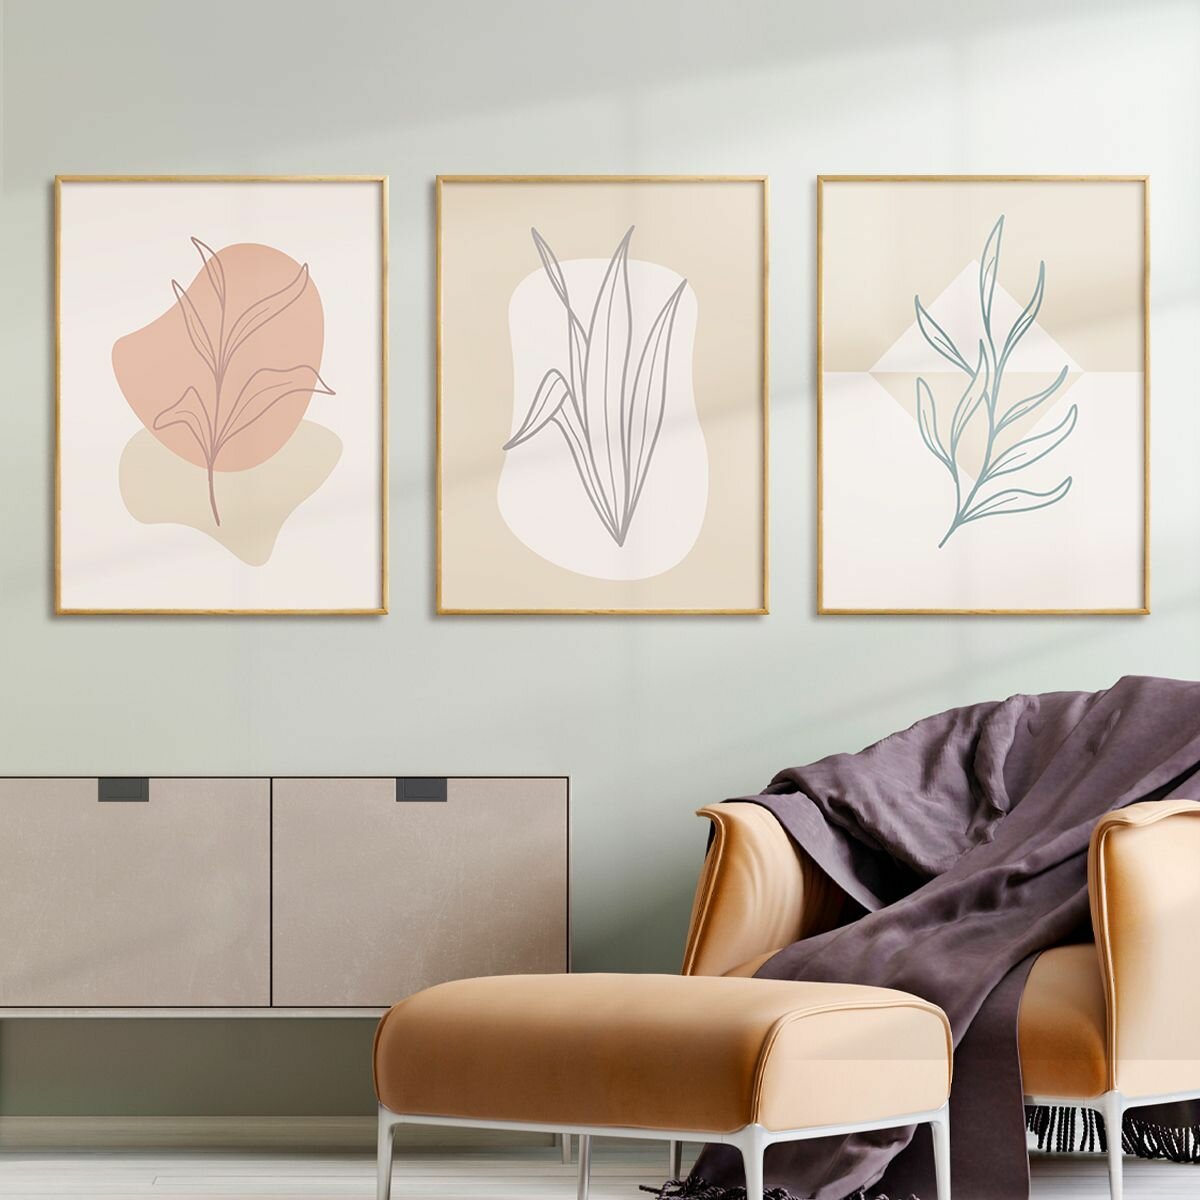 Постер 3 шт 30х40 без рамки "Абстрактные растения в светлых тонах" набор картин для интерьера